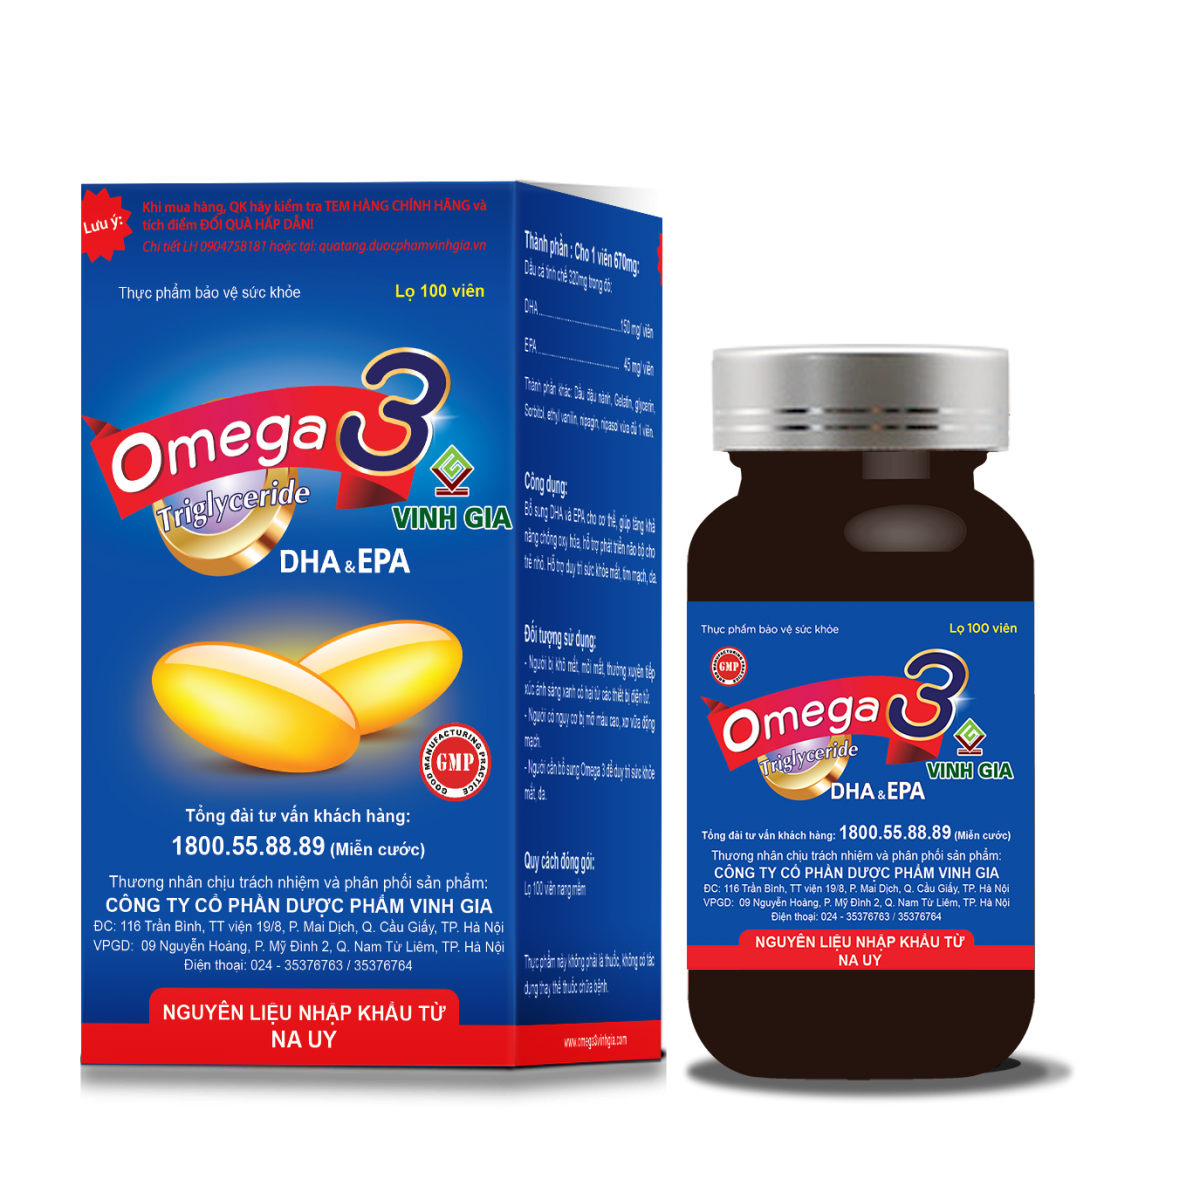 Omega 3 Vinh Gia – Bổ sung Omega-3 dạng Triglyceride với DHA và EPA hàm lượng cao